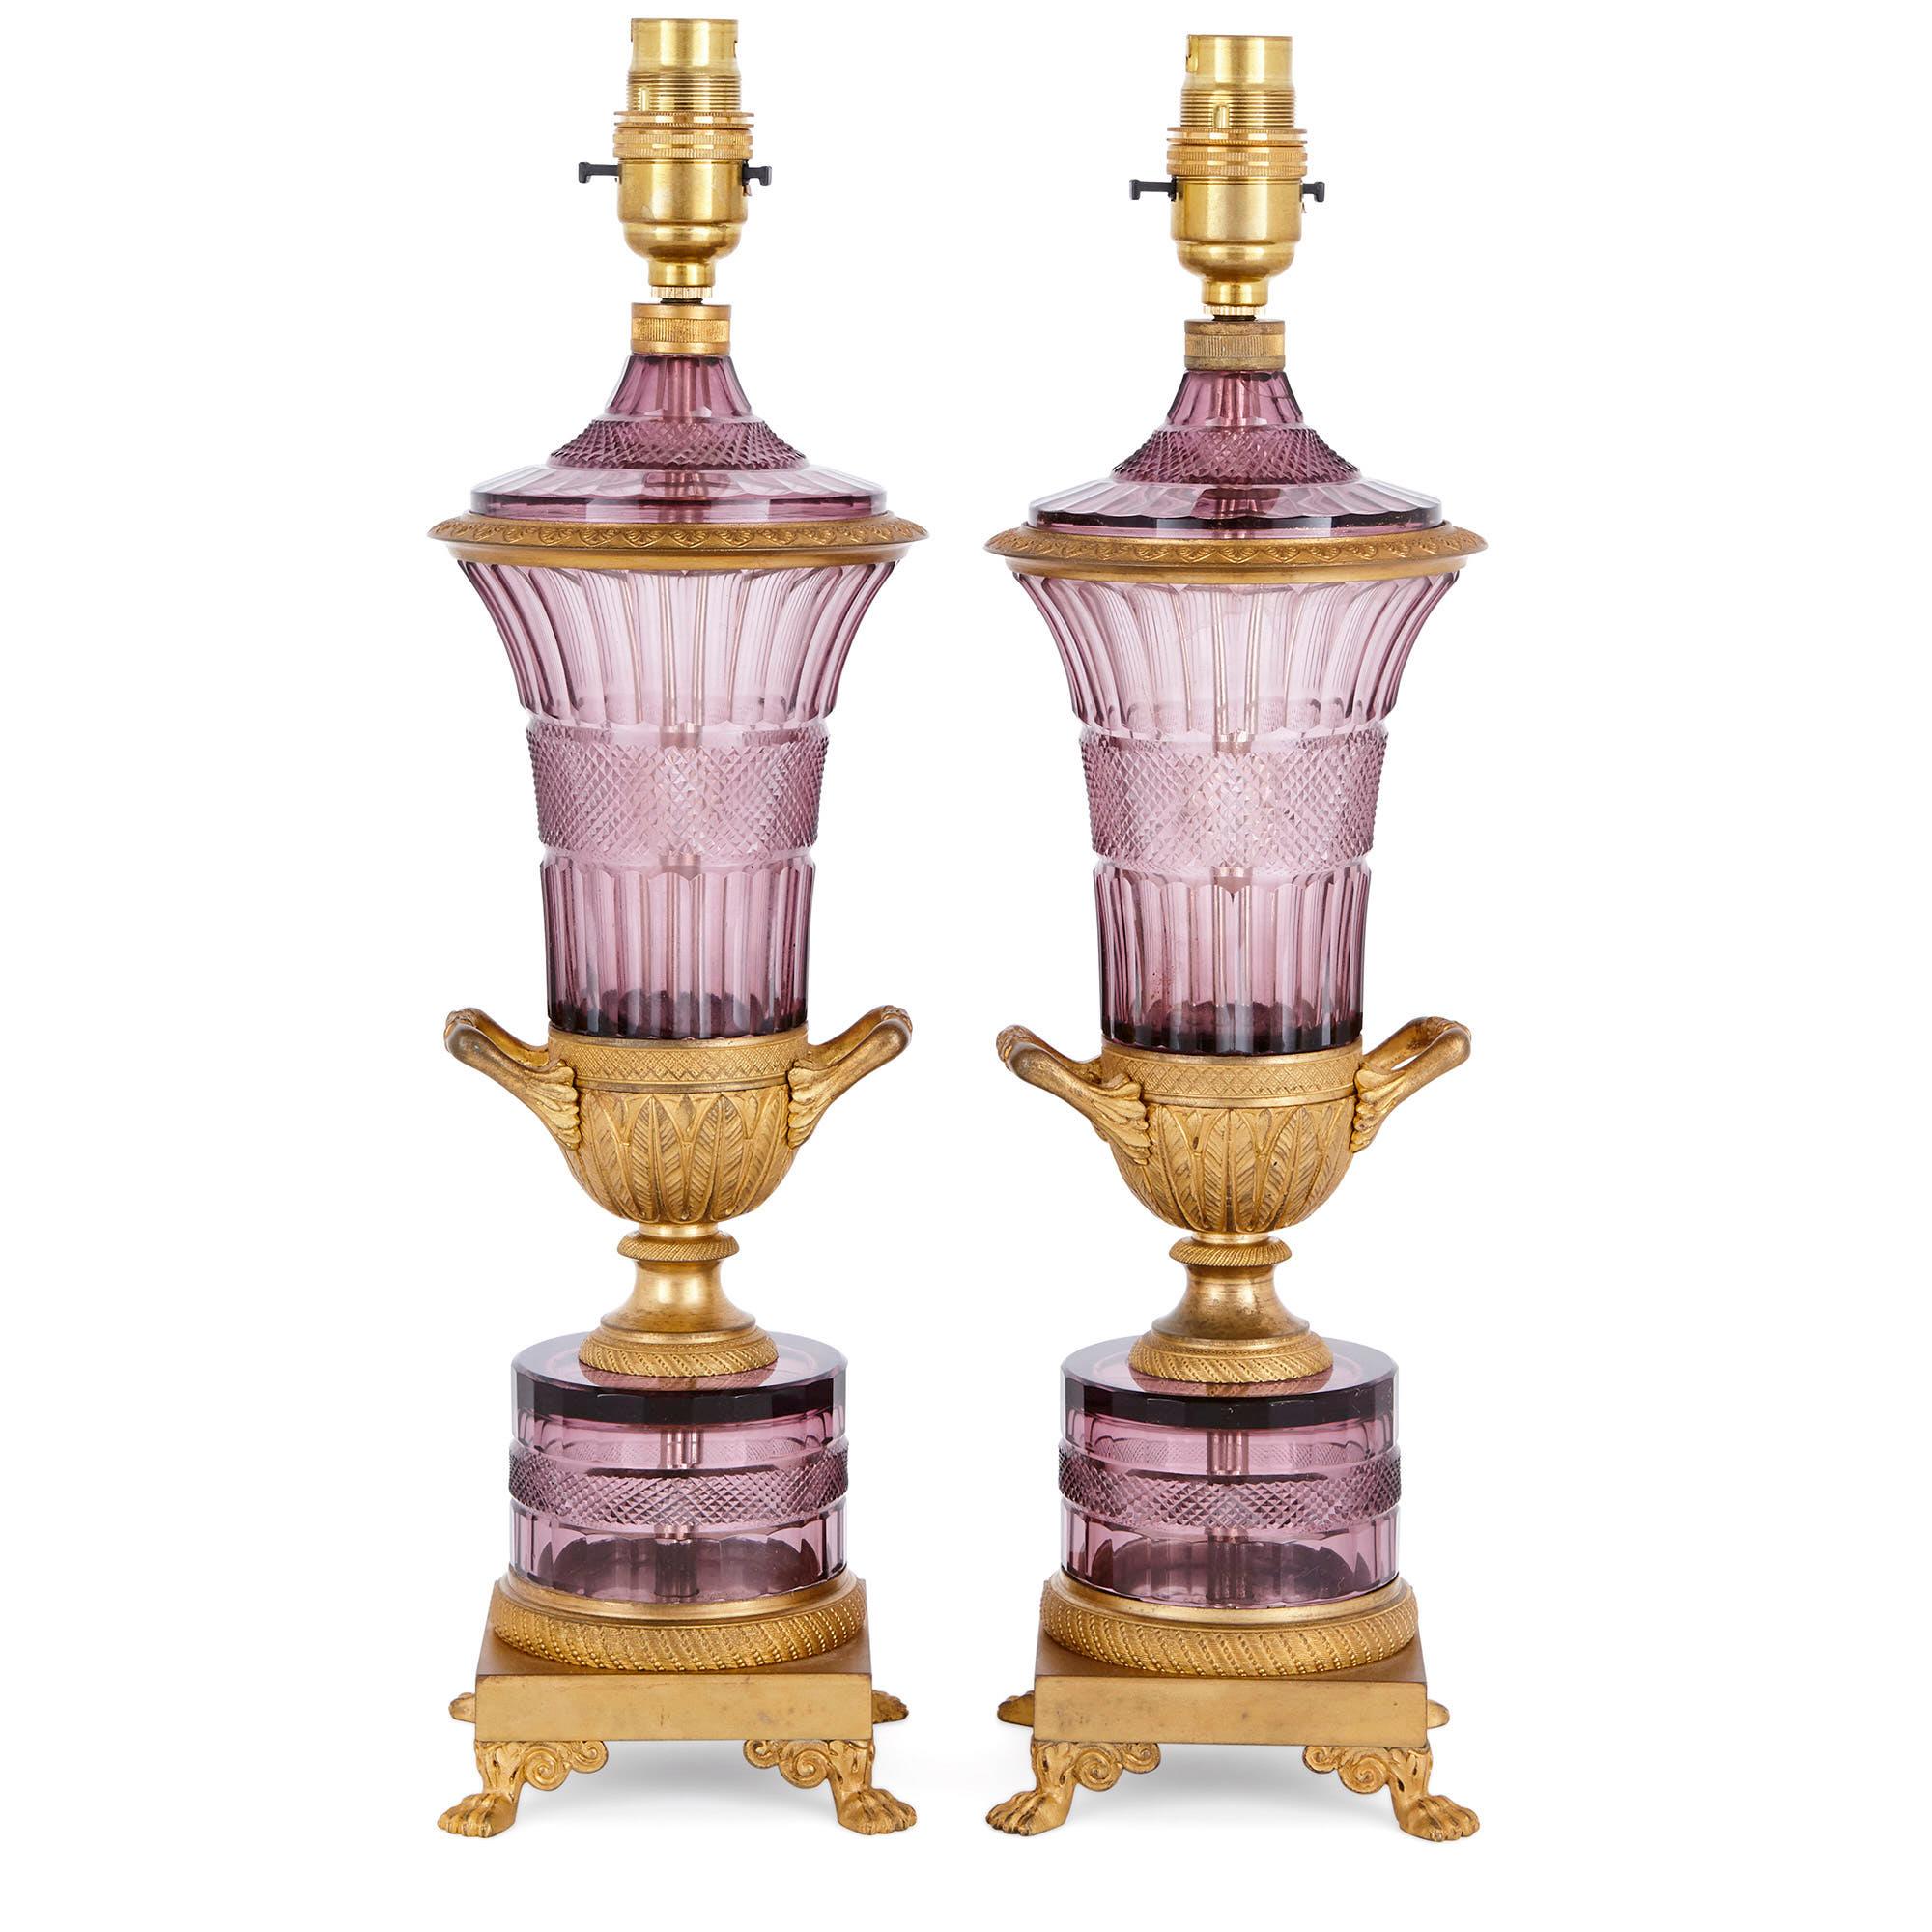 Deux lampes autrichiennes en verre taillé violet et bronze doré 
Autrichien, Début du 20e siècle
Hauteur 40cm, largeur 11cm, profondeur 11cm 

Ces lampes sont de véritables pièces antiques exceptionnelles du design autrichien. Ils ont été créés au